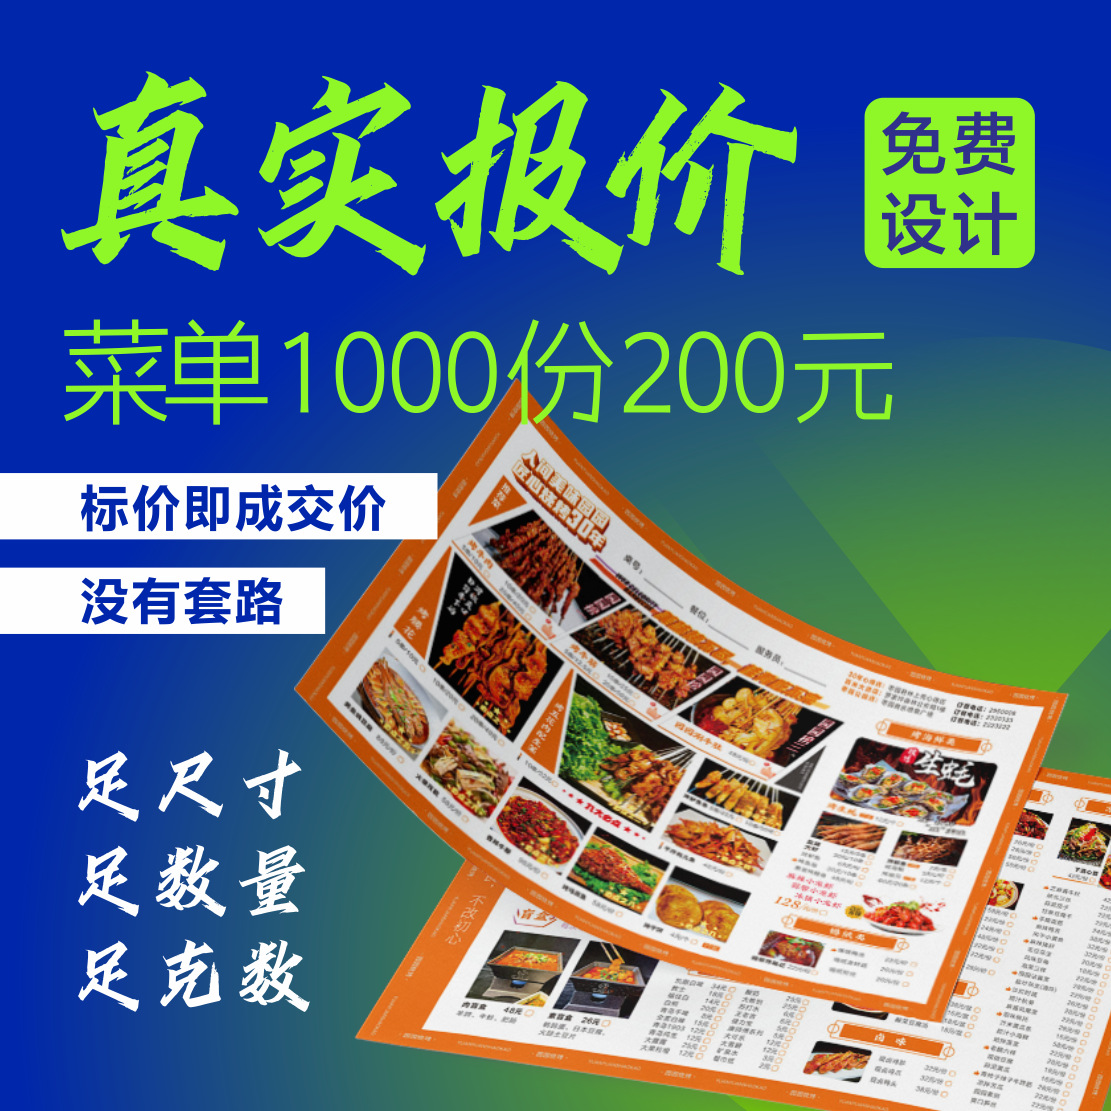 海报定 制点菜单印刷A4A3三折页彩印餐饮广告菜单纸宣传单展示牌